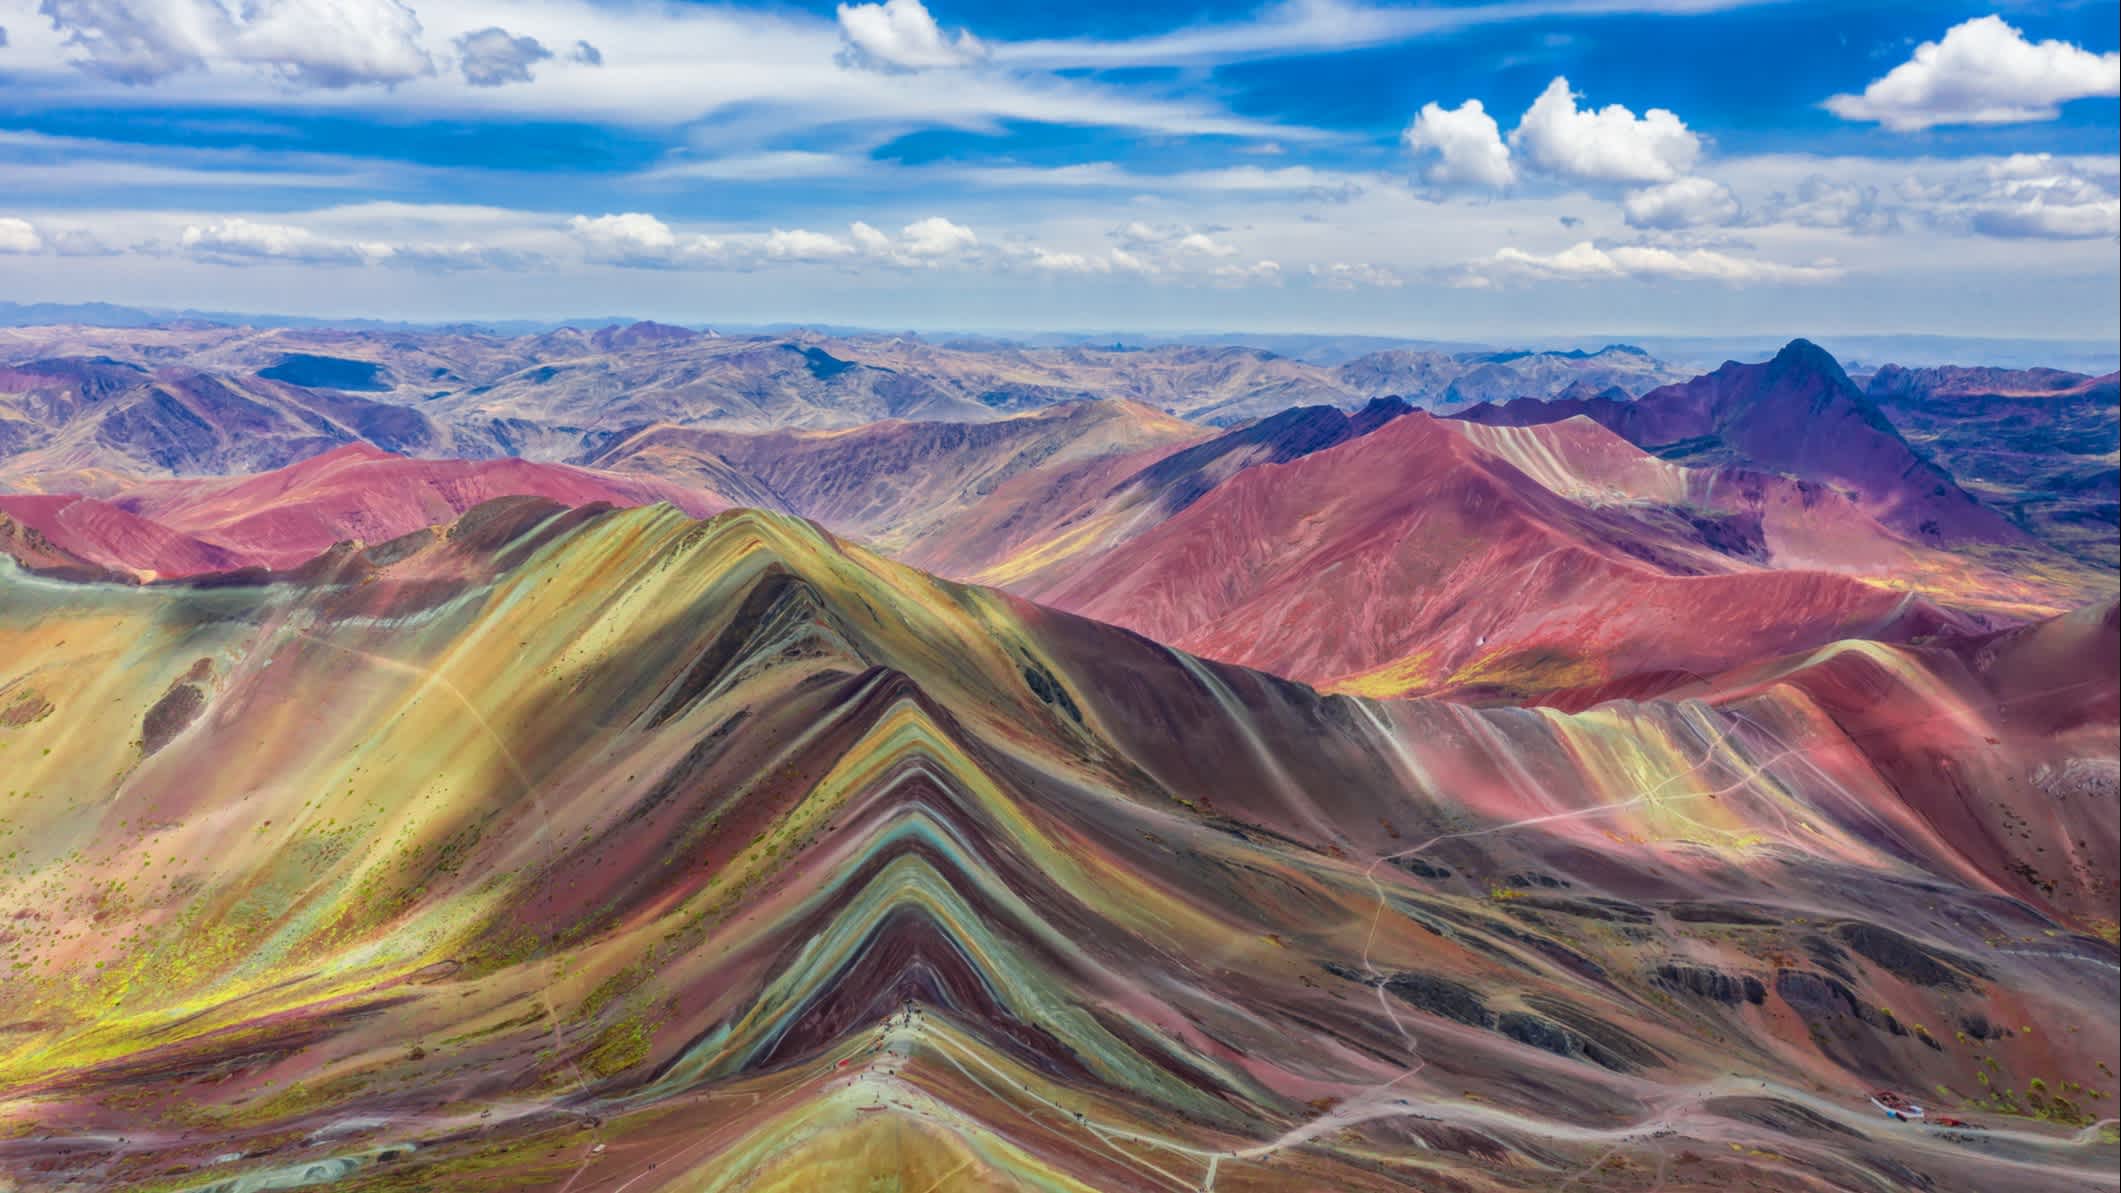 Luftaufnahme des gesamten Regenbogengebirges, Vinicunca, Peru. 